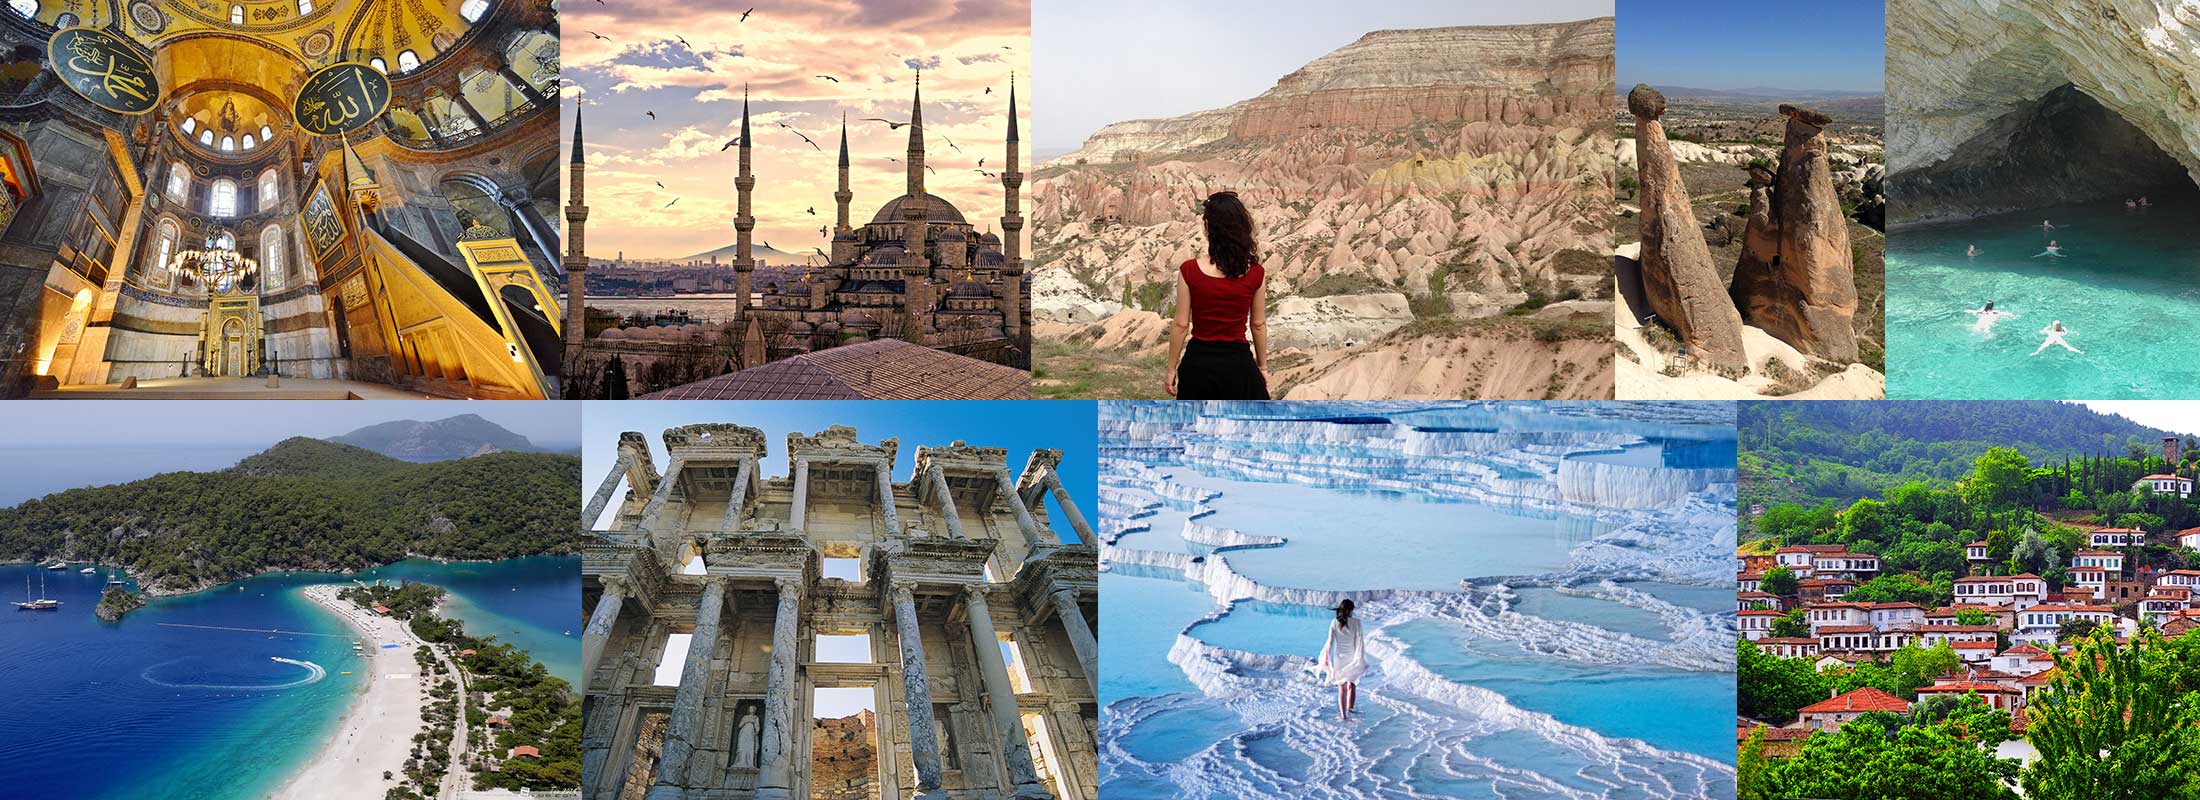 turquia-excursion-tours-12-dias-estambul-santa-sofia-museo-azul-mezquita-capadocia-azul-crucero-olimpos-fethiye-efeso-pamukkale-sirince